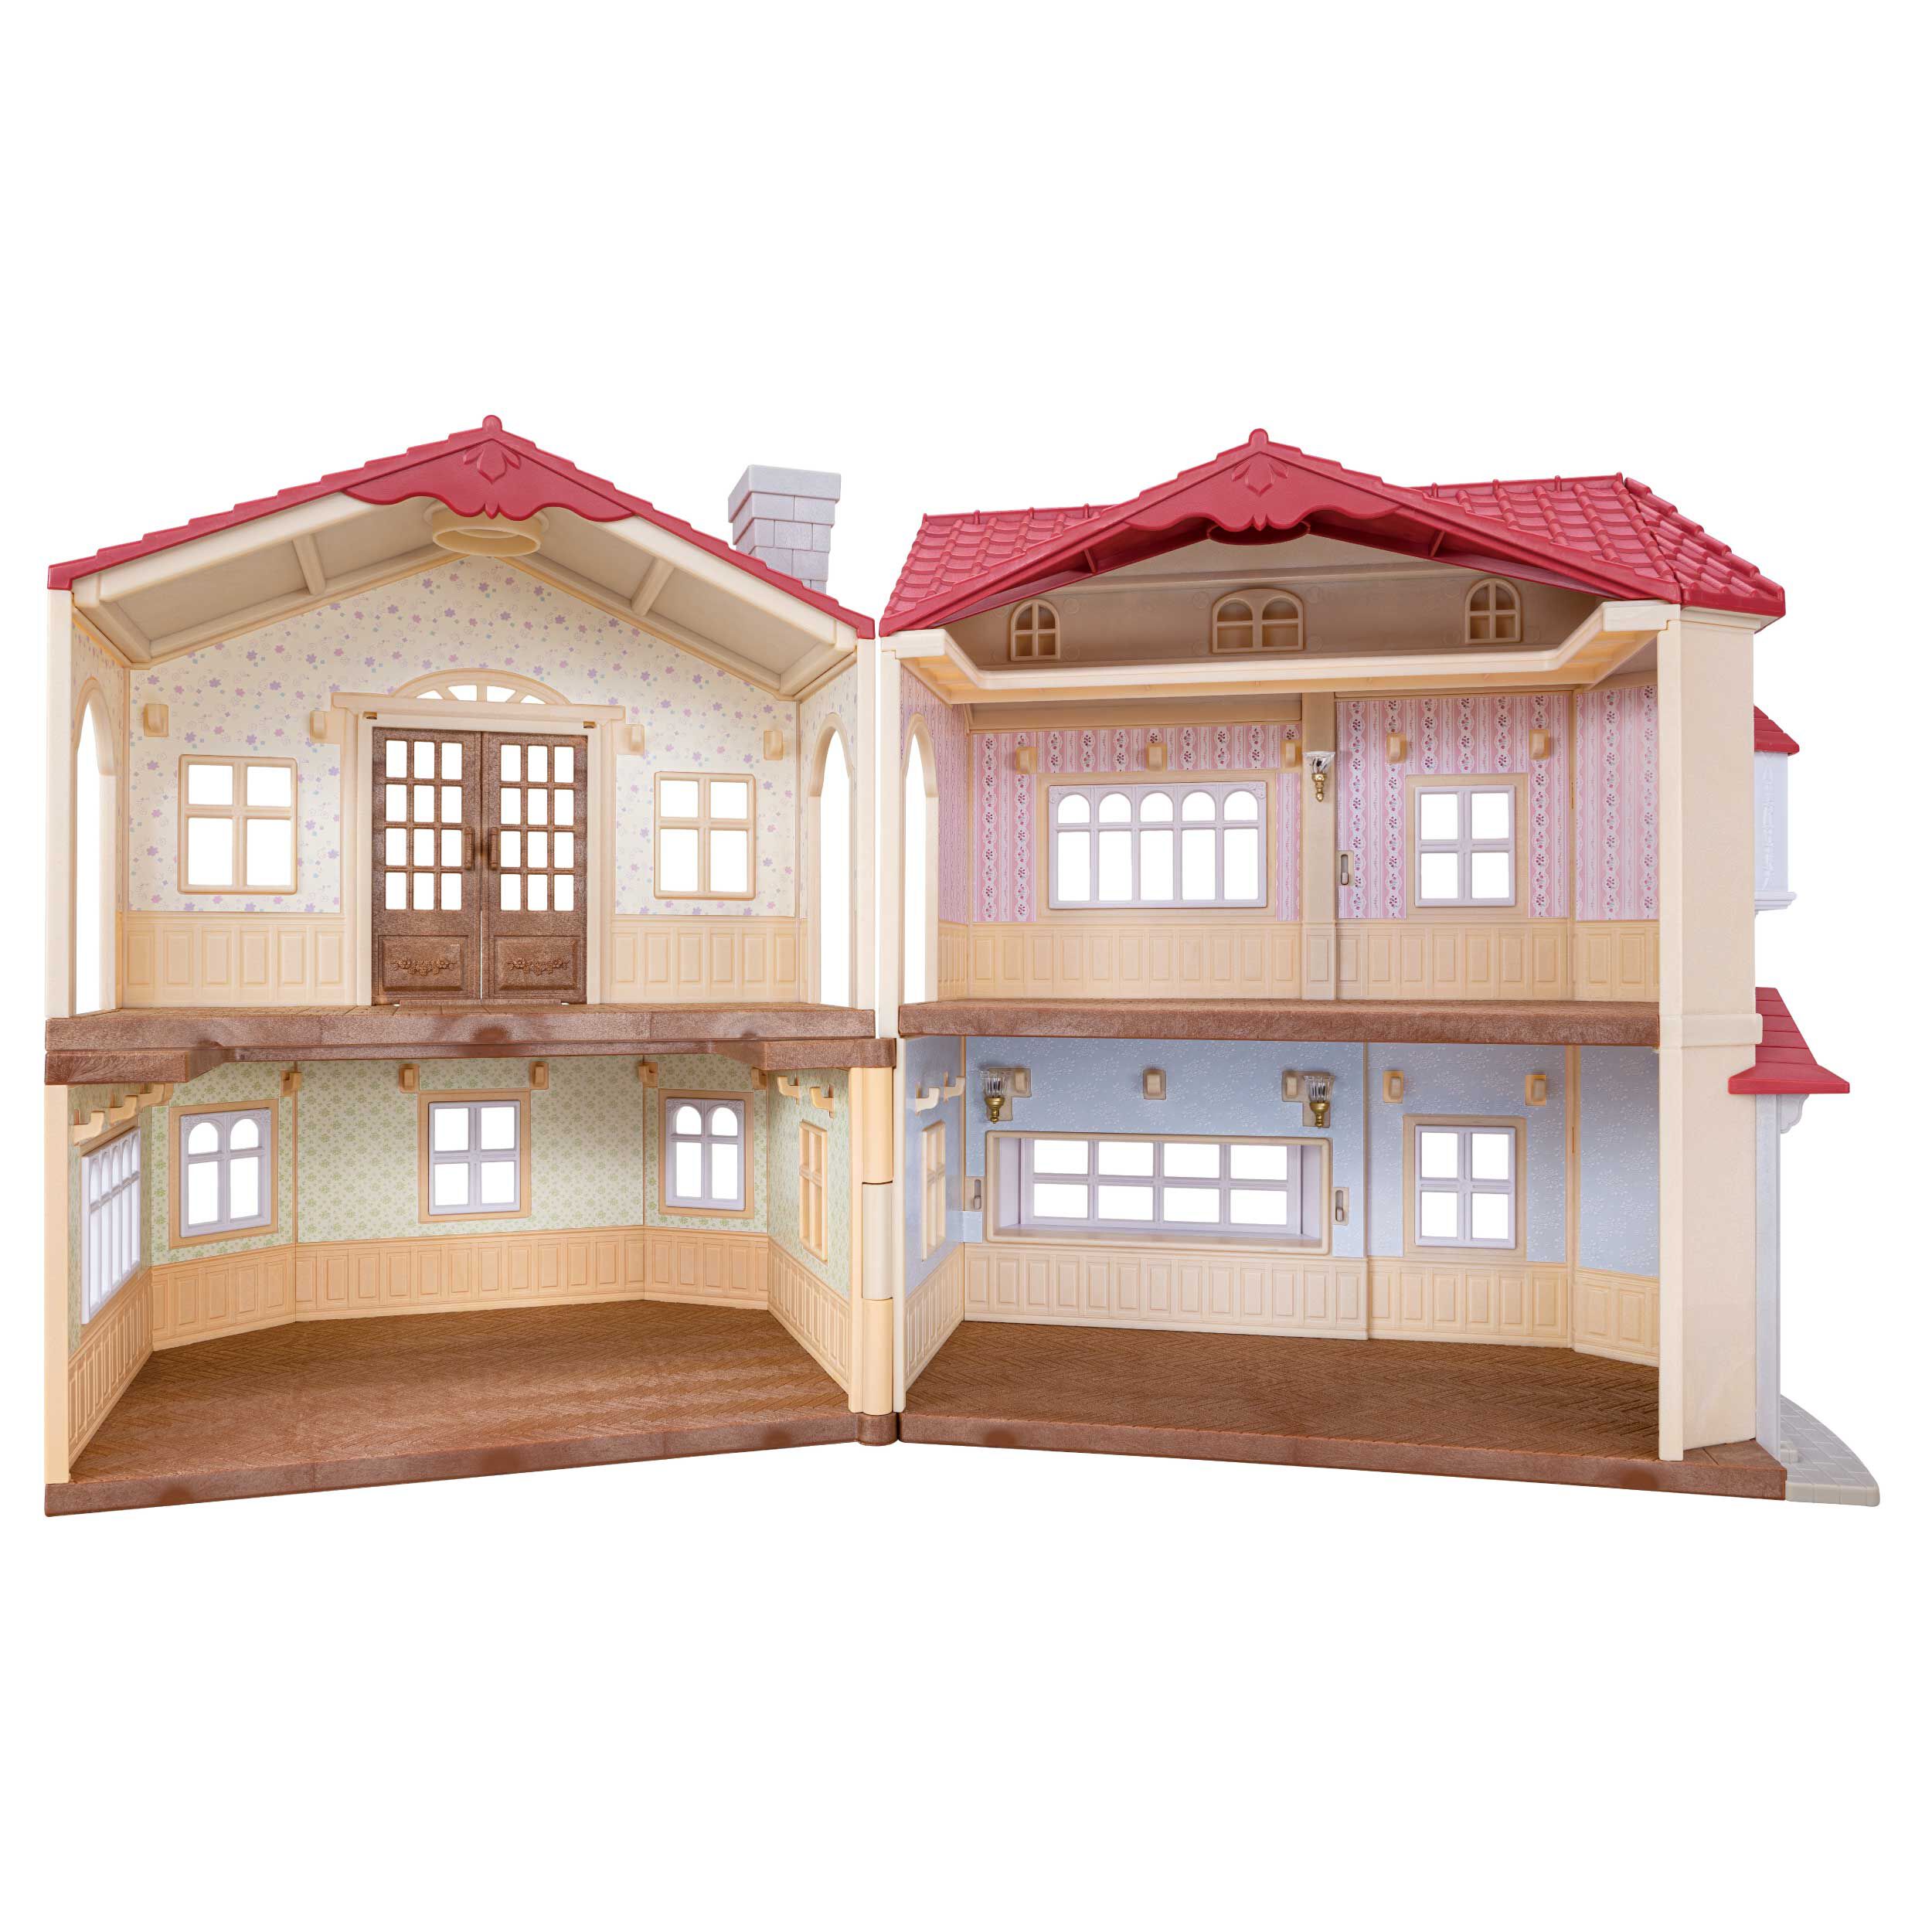 赤い屋根の大きなお家 専用壁紙セット（フラワー柄） / 小物・パーツ